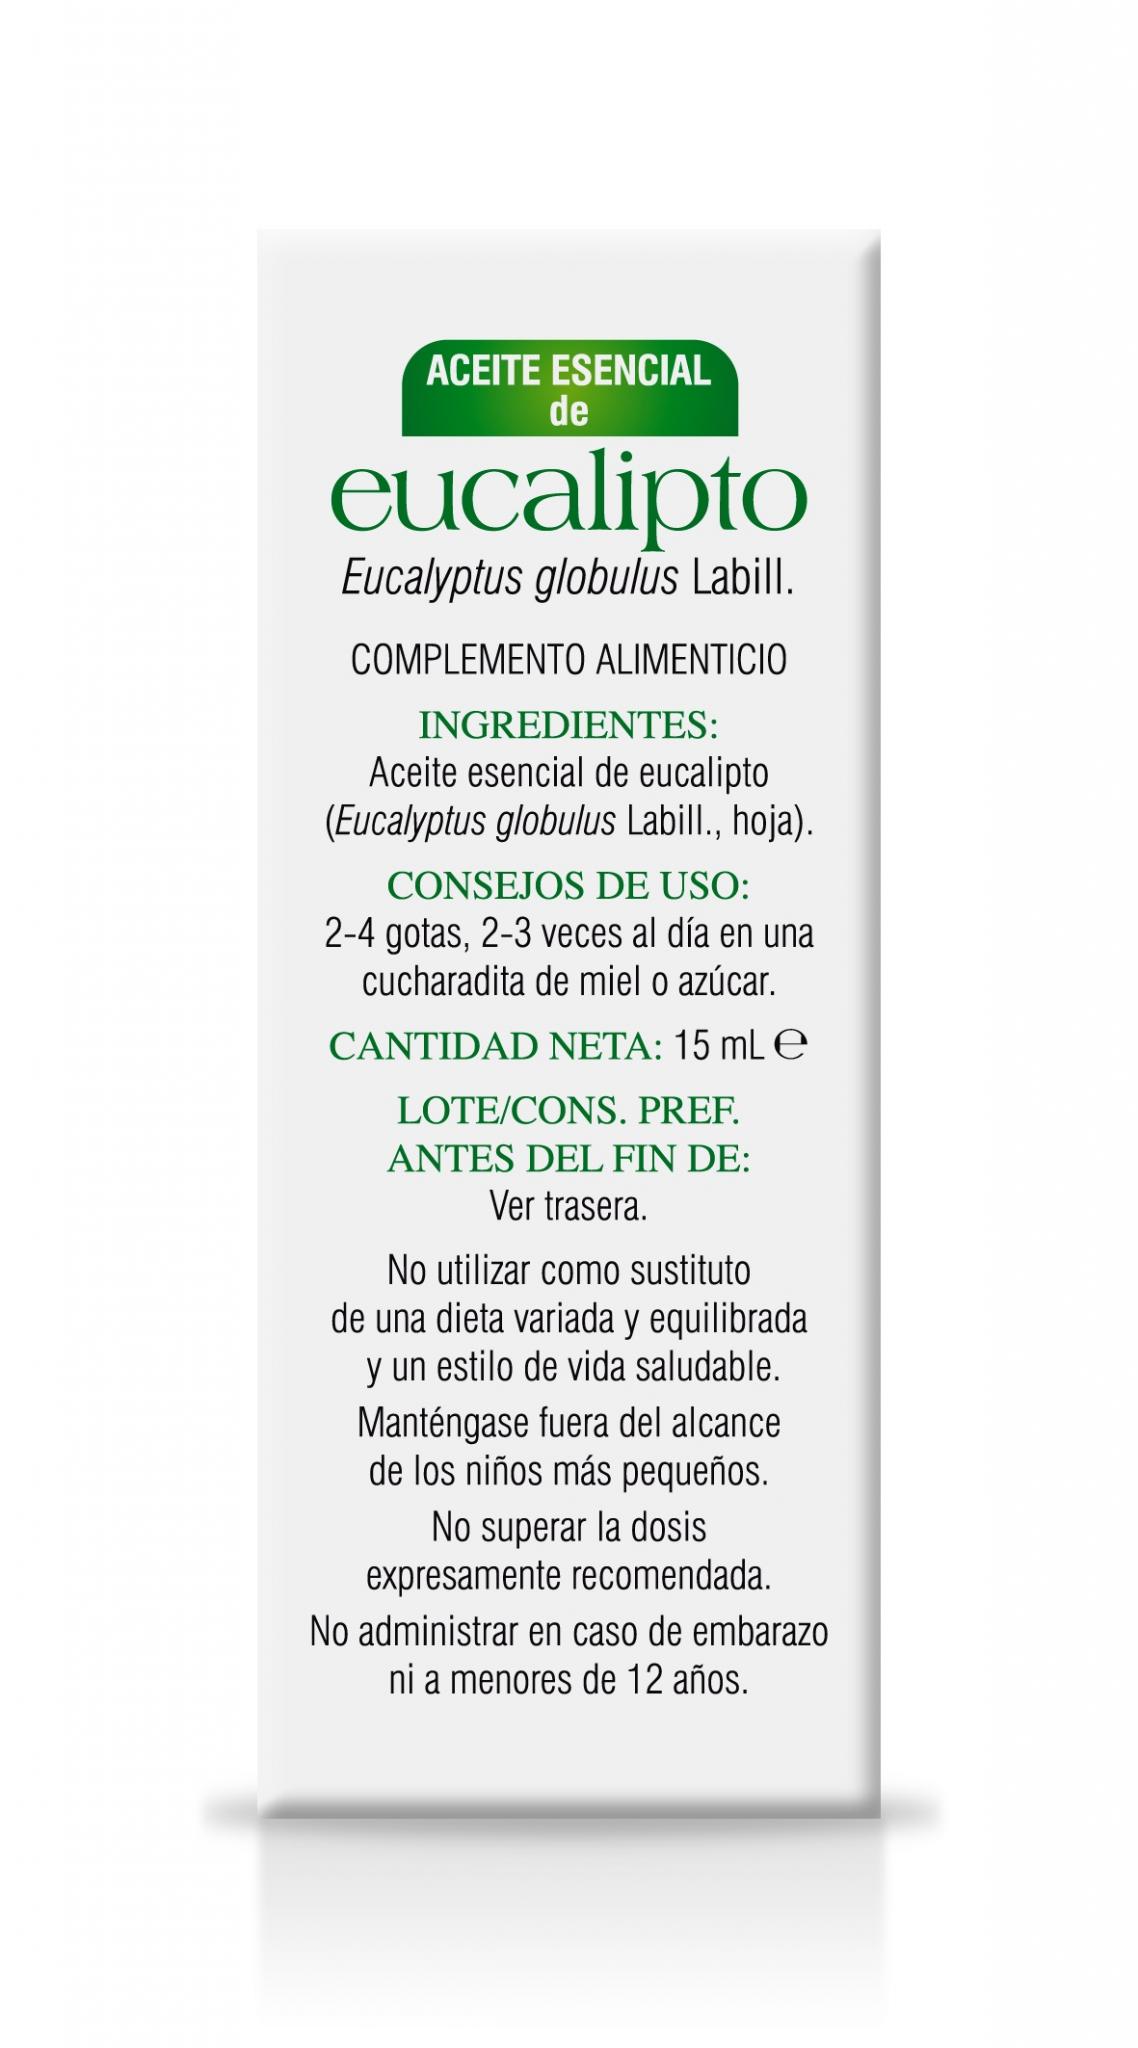 aceite-esencial-eucalipto-soria-natural-3.jpg